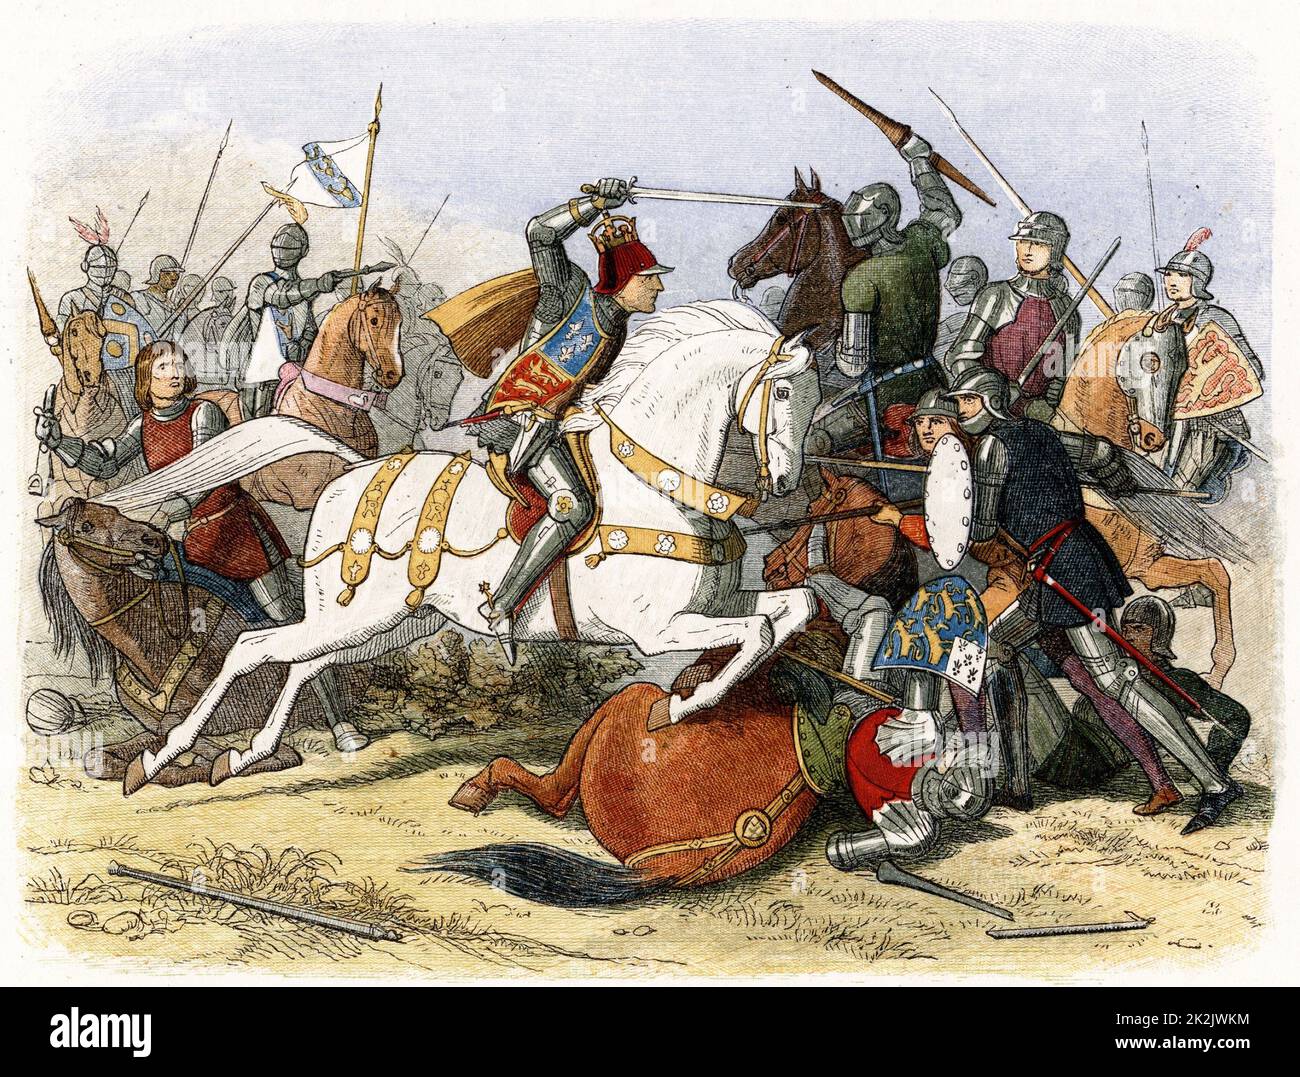 Schlacht von Bosworth, 22. August 1485. Richard III, auf weißem Pferd. Farbdruck Holzstich, 1864 Stockfoto